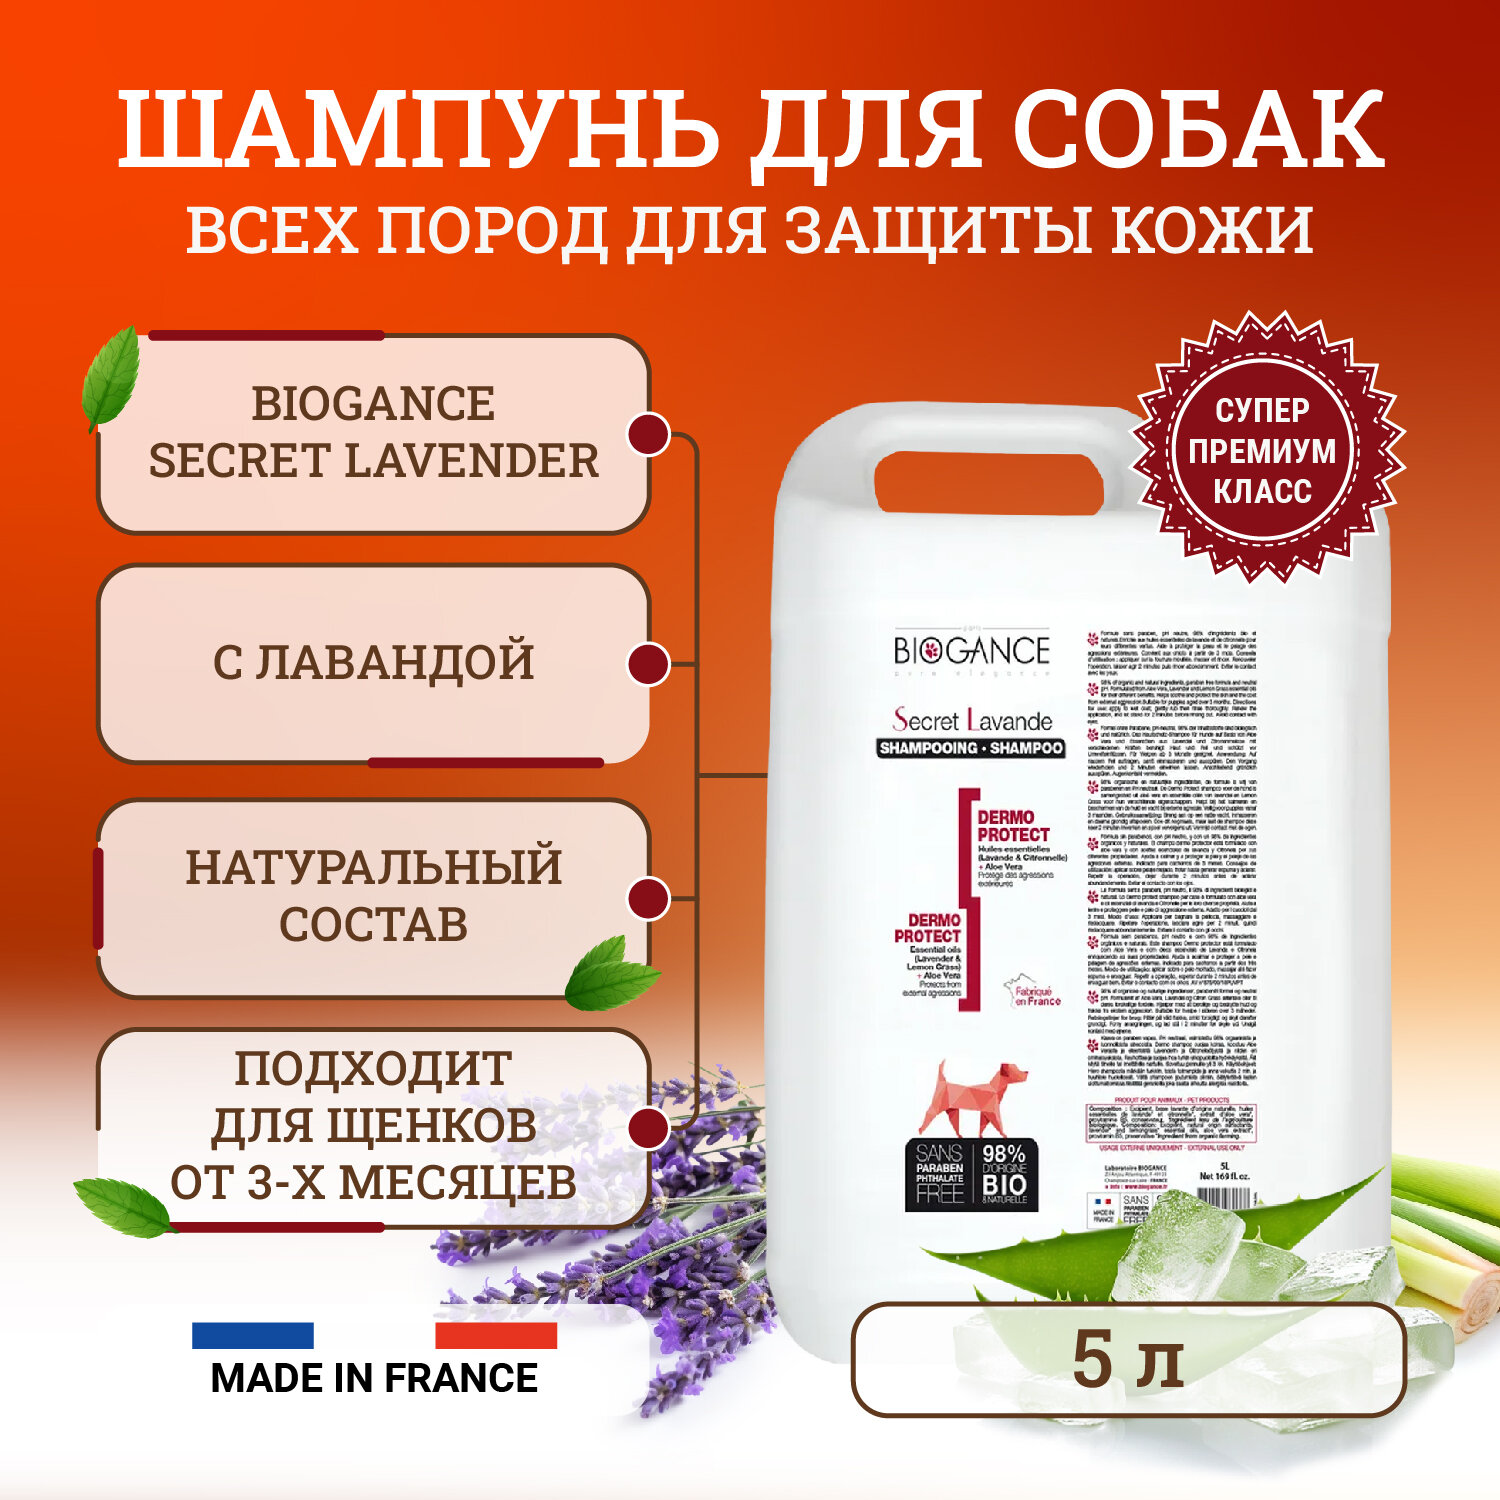 Натуральный био-шампунь Biogance Secret Lavender для собак для бережной защиты кожи от неблагоприятных воздействий окружающей среды - 5 л